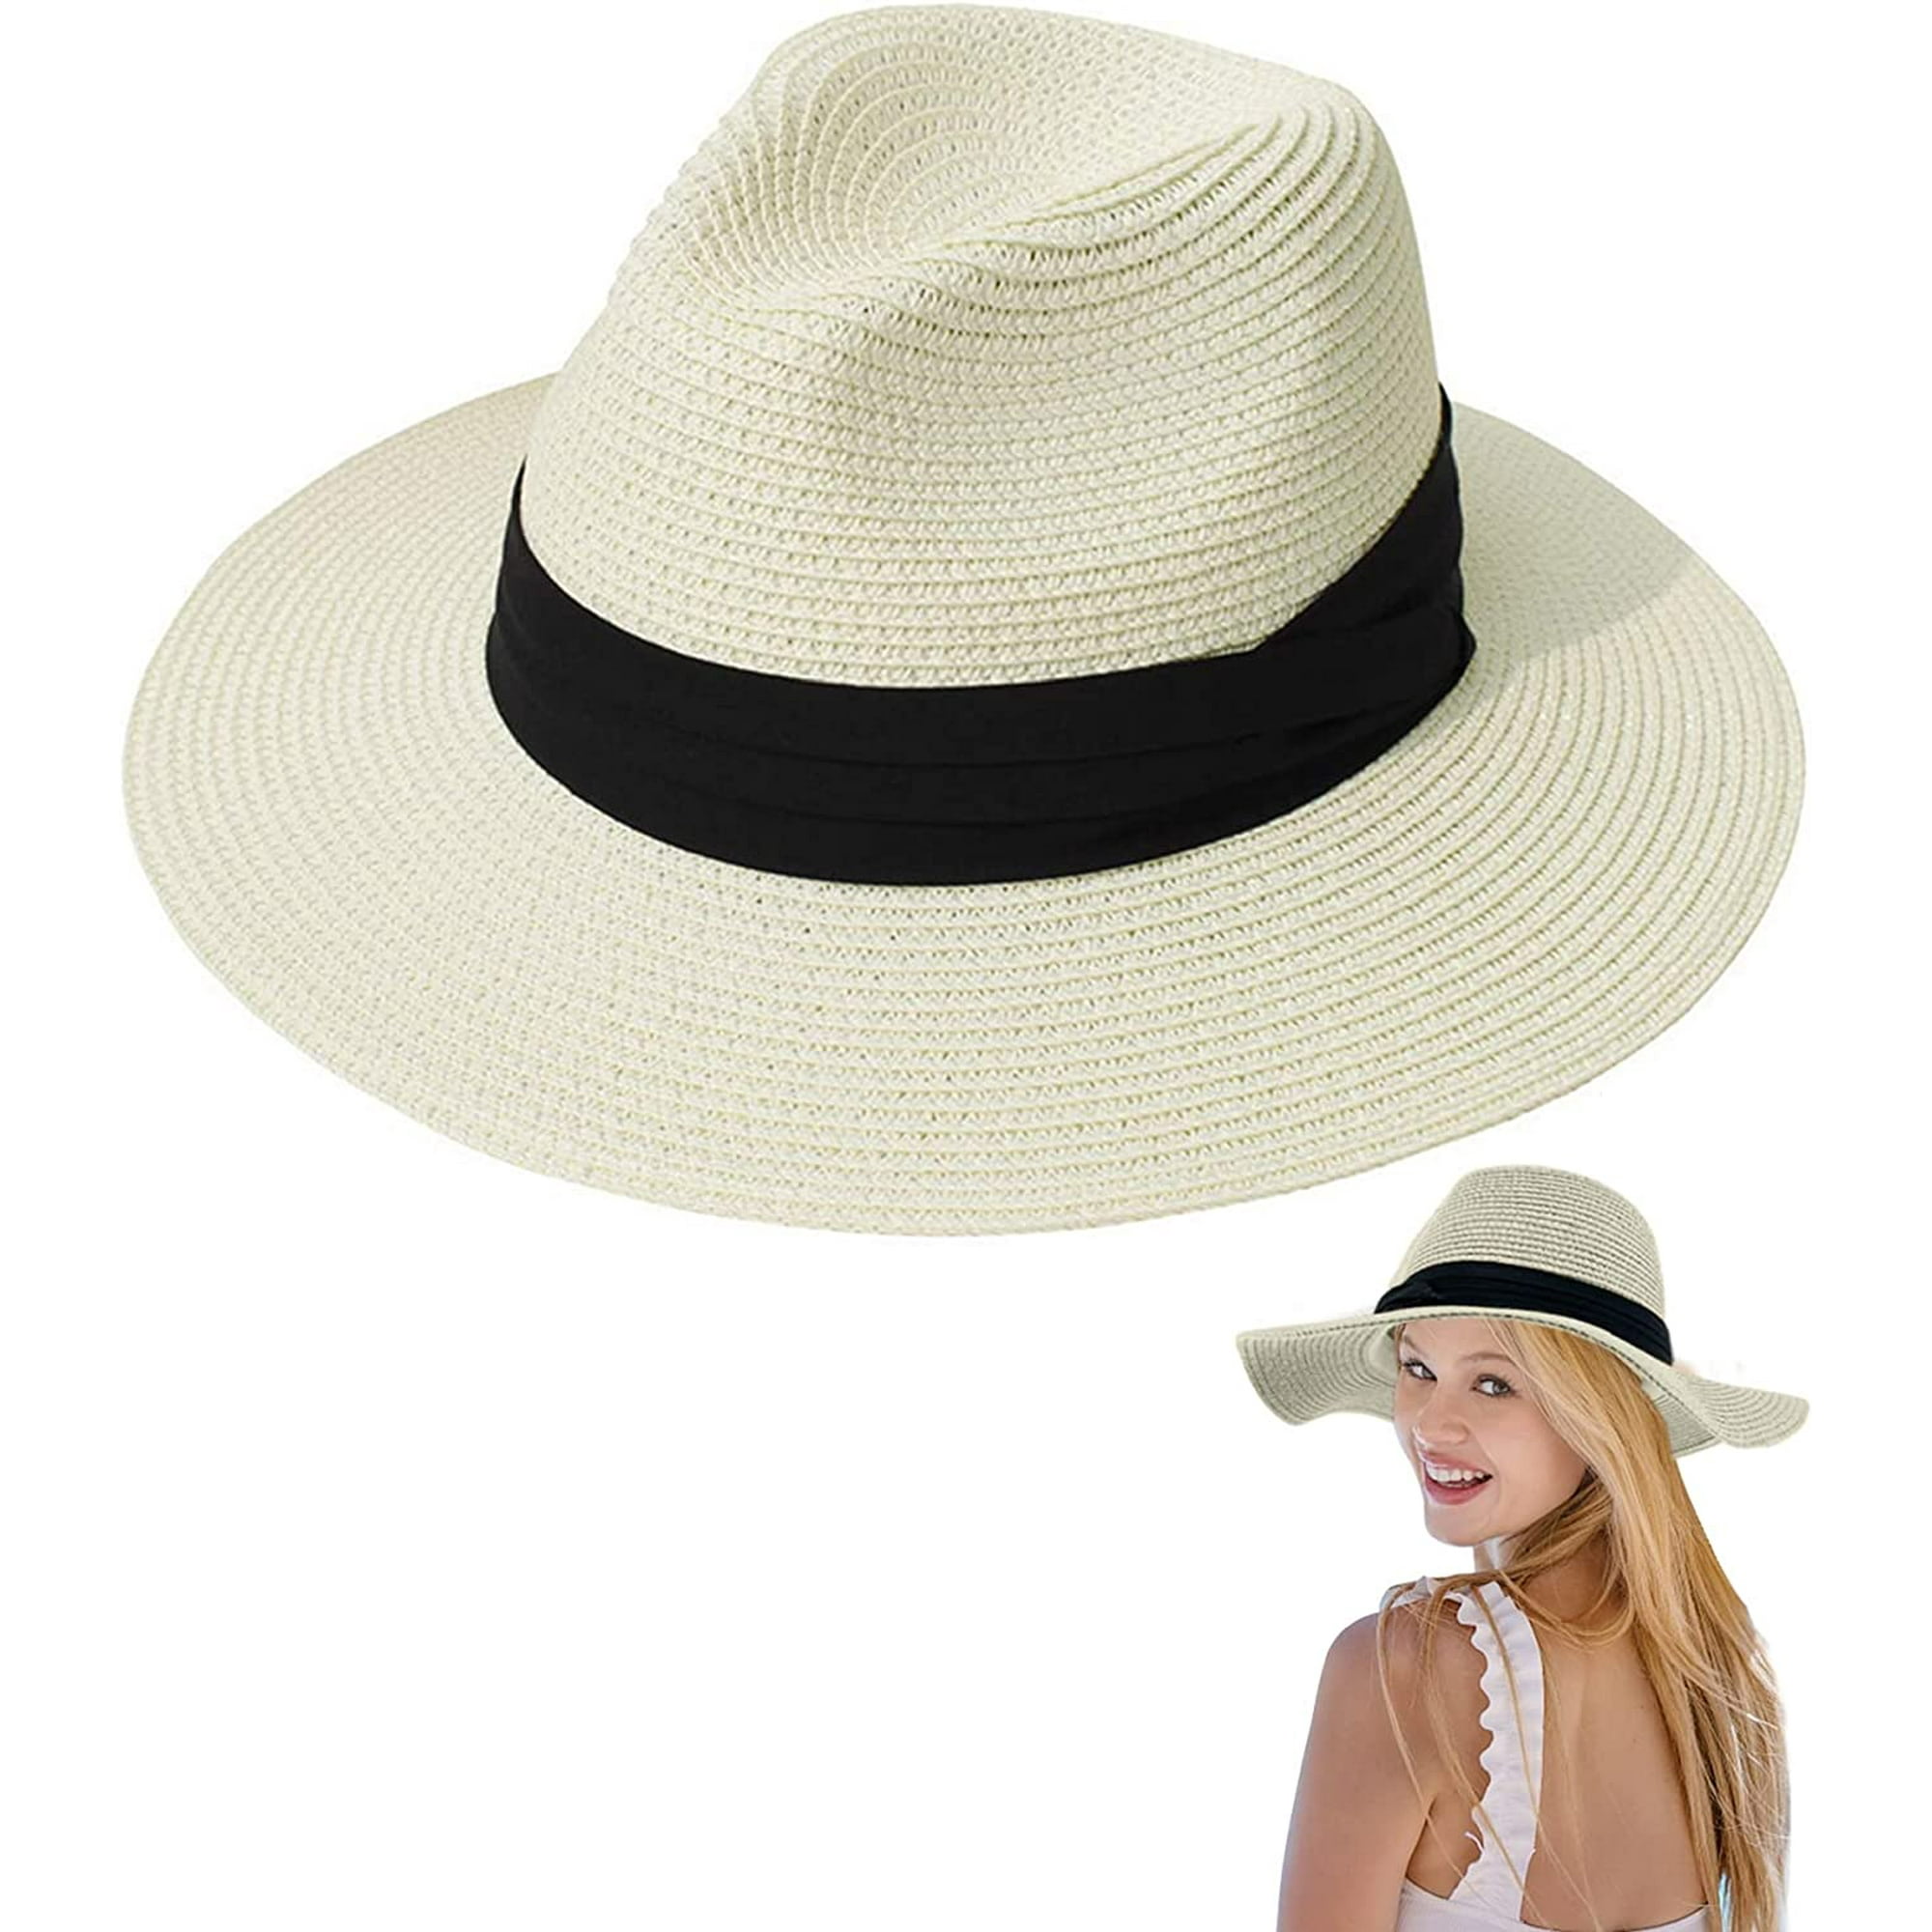 Tradineur - Sombrero de mujer con flor, paja flexible, ala ancha y